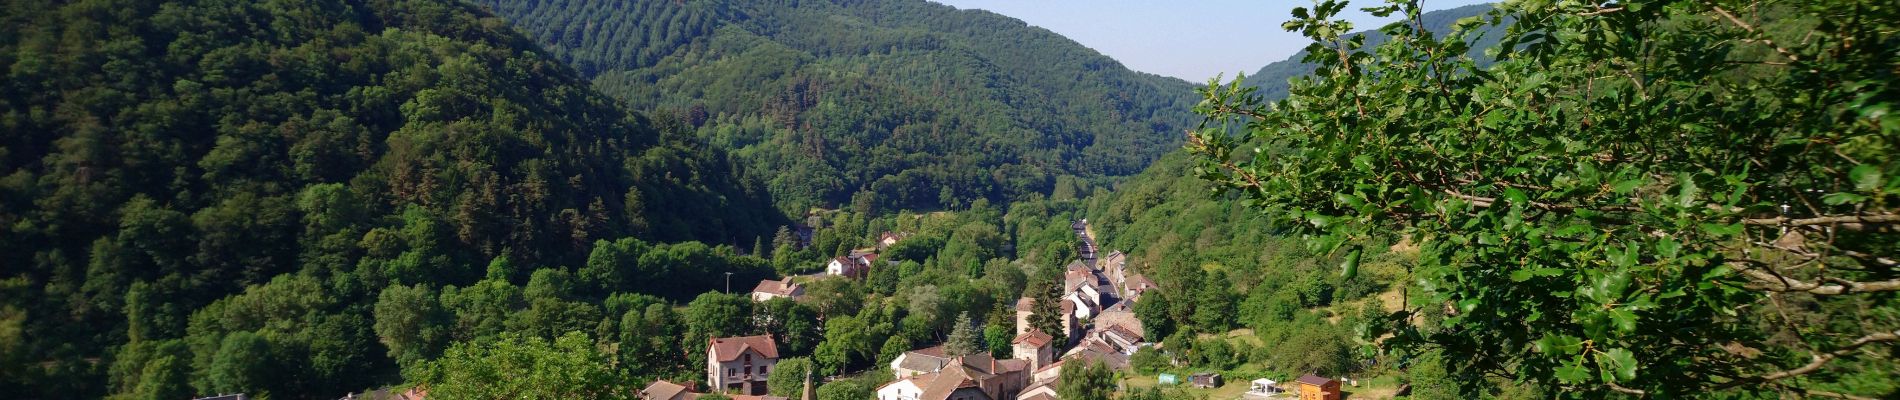 Randonnée Marche Ferrières-Saint-Mary - Cantal - Ferrières-Saint-Mary - Gorges de la Bouzaire - 7.7km 350m 2h50 - 2019 07 01 - Photo